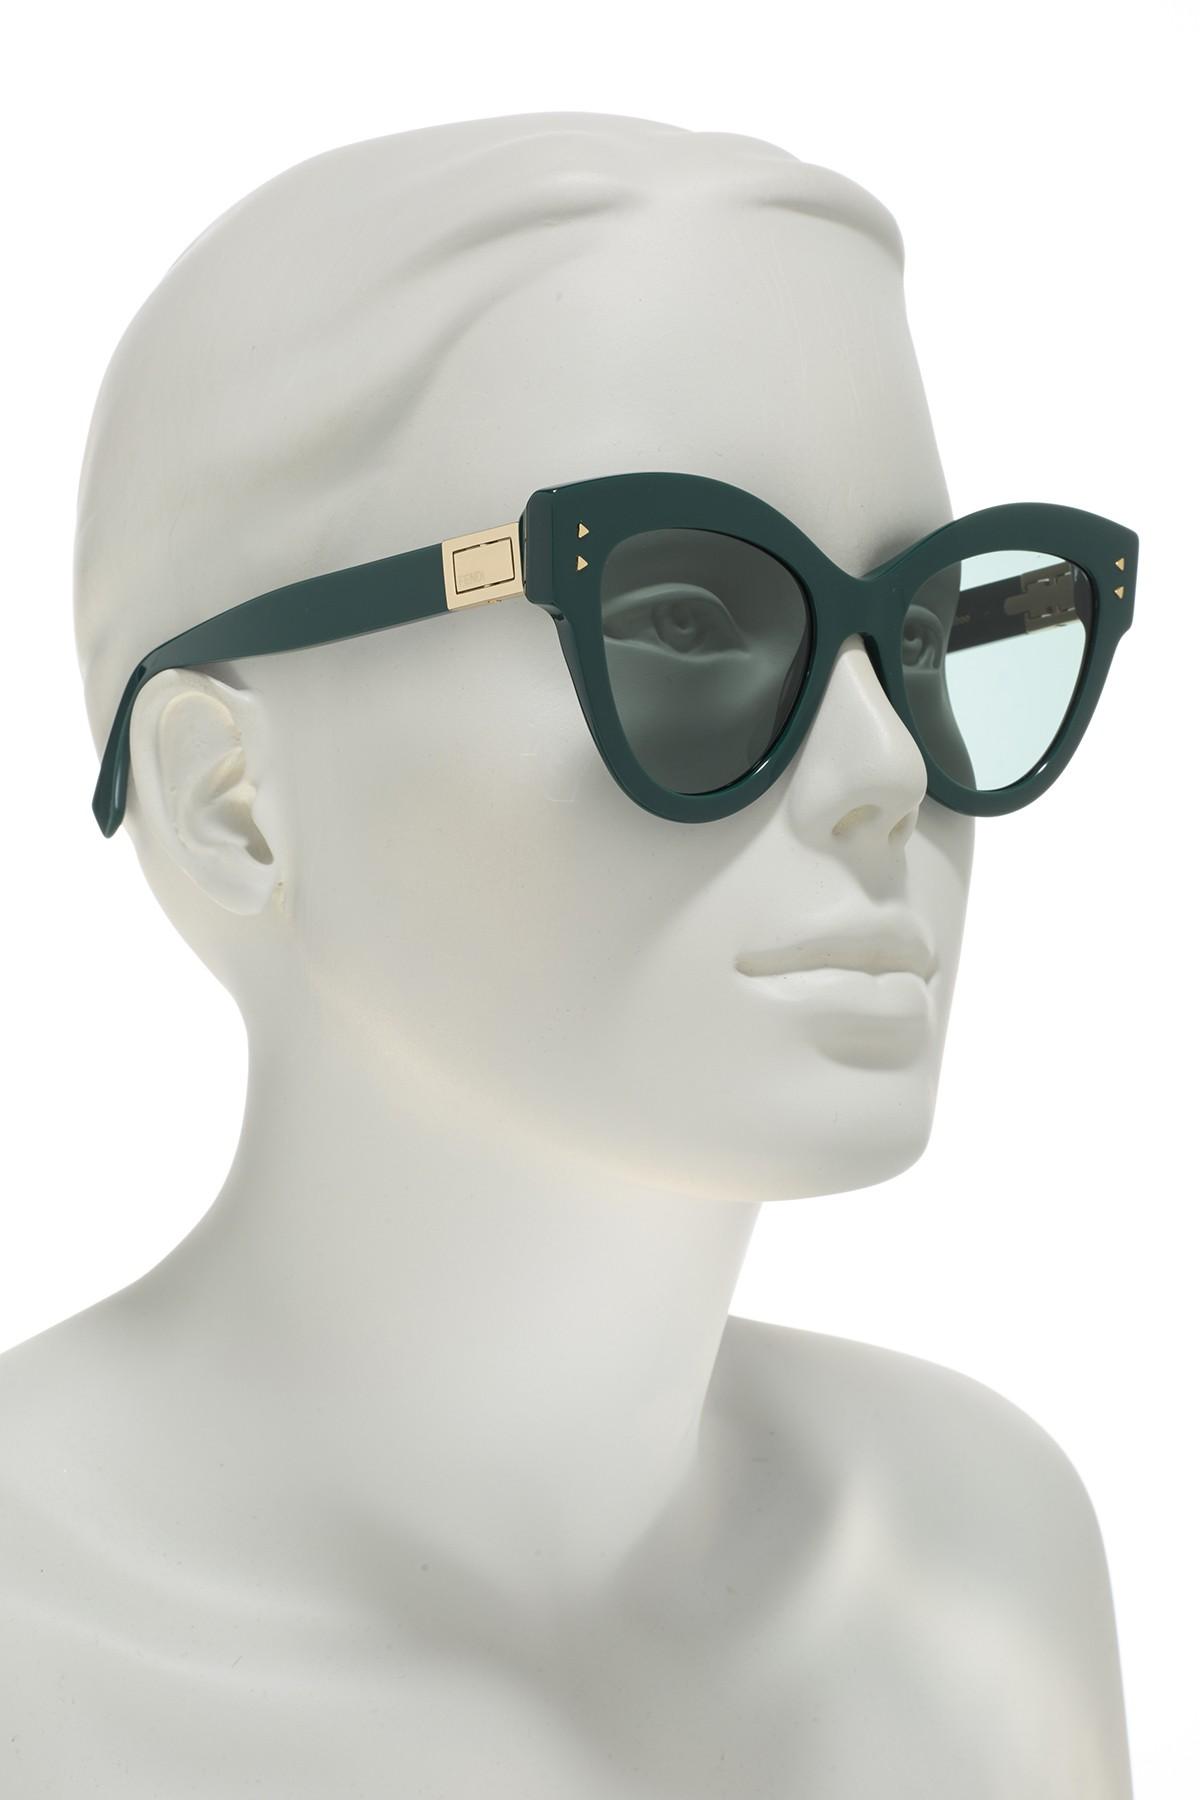 fendi 52mm cat eye sunglasses